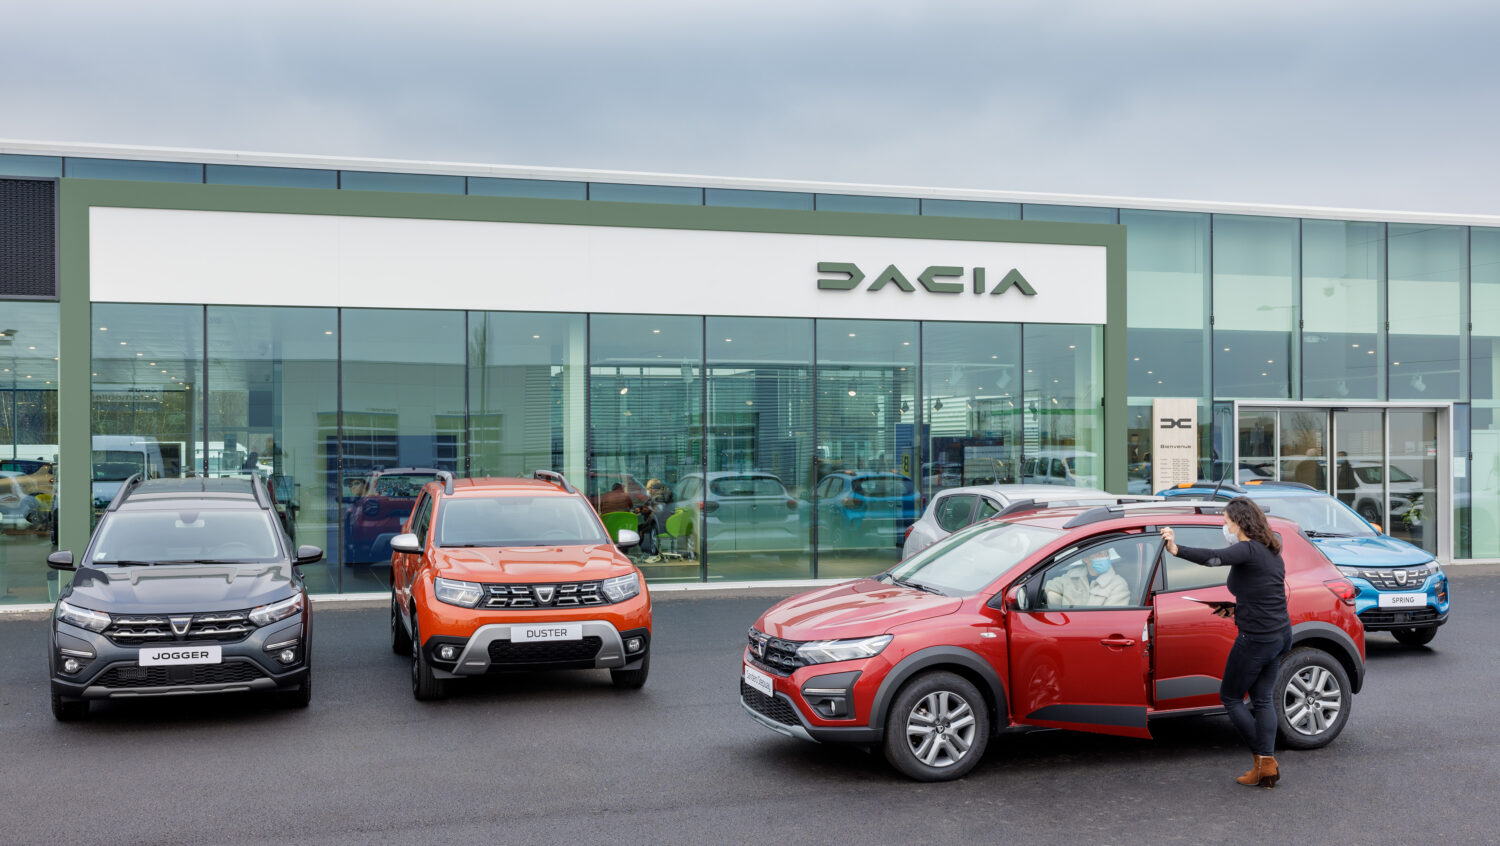 2022 - Story Dacia - Dealerships see Dacia’s new face